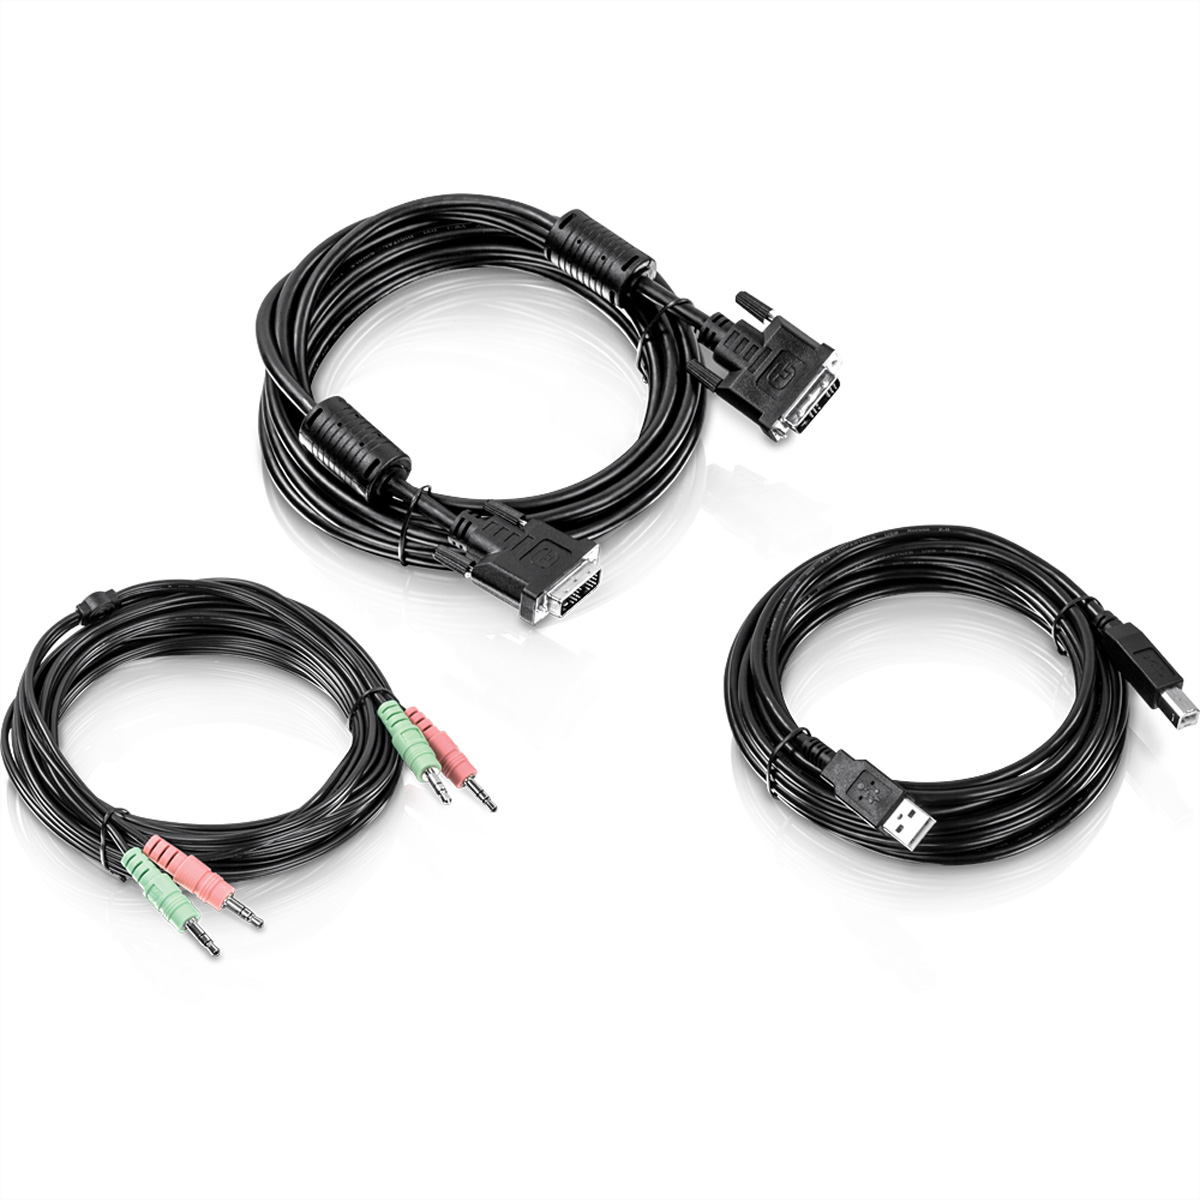 KVM TRENDNET m DVI-I Kit 4,5m Audio, 4,5 TK-CD15 Kabel KVM-Kabel, USB